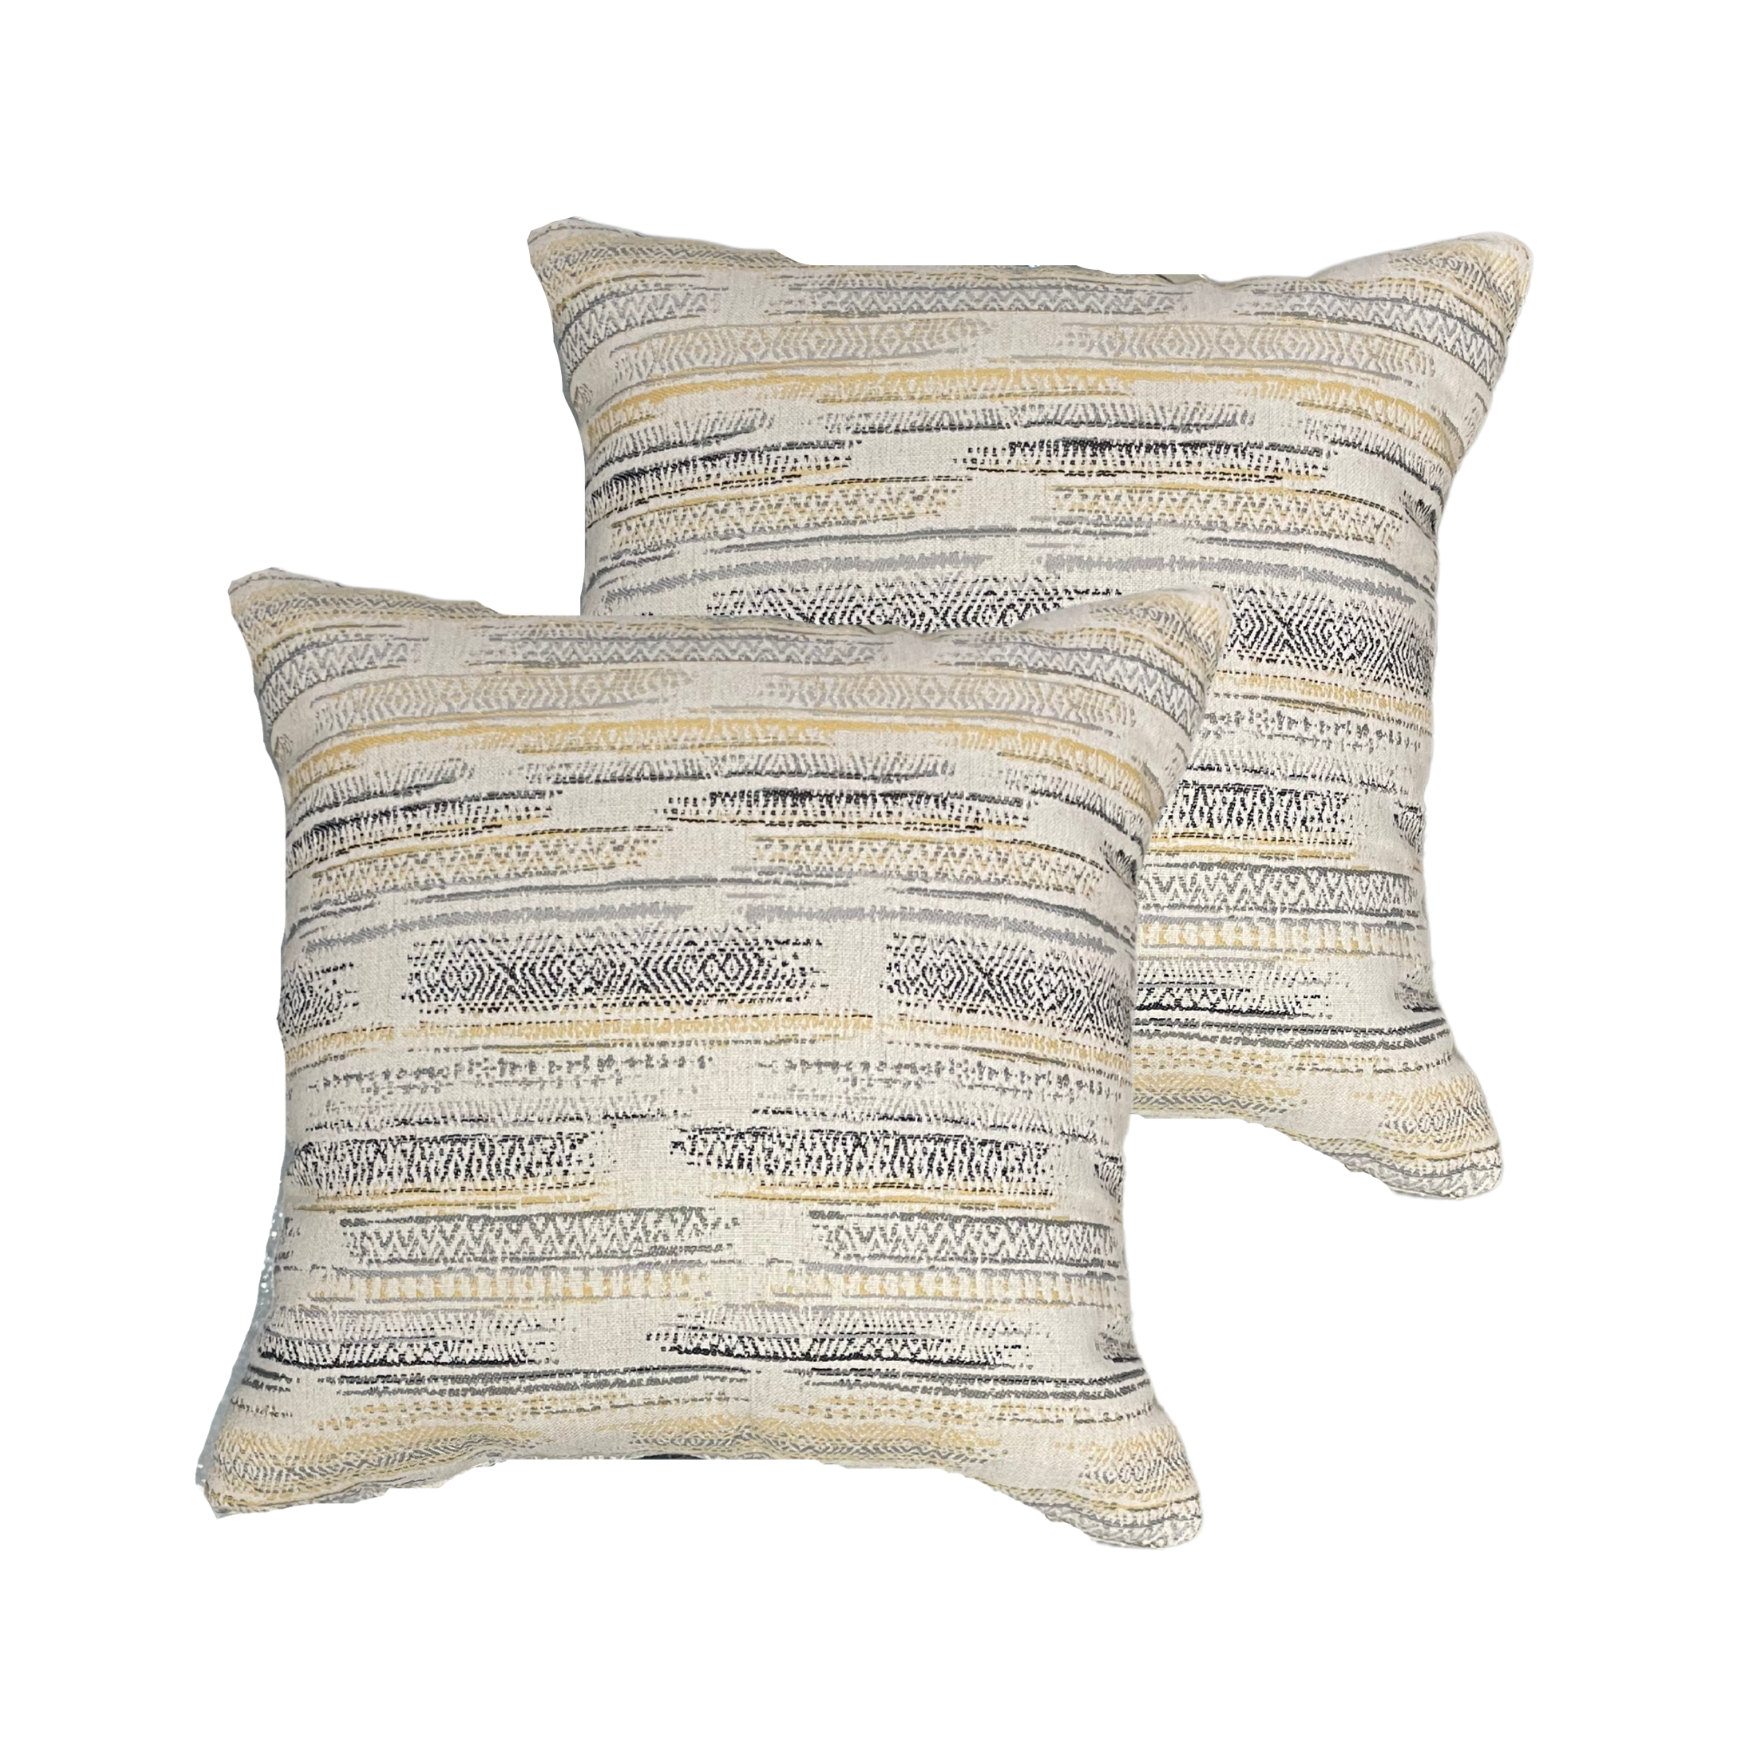 Neutral Pattern 18” x 18” Toss Pillows (Set of 2)